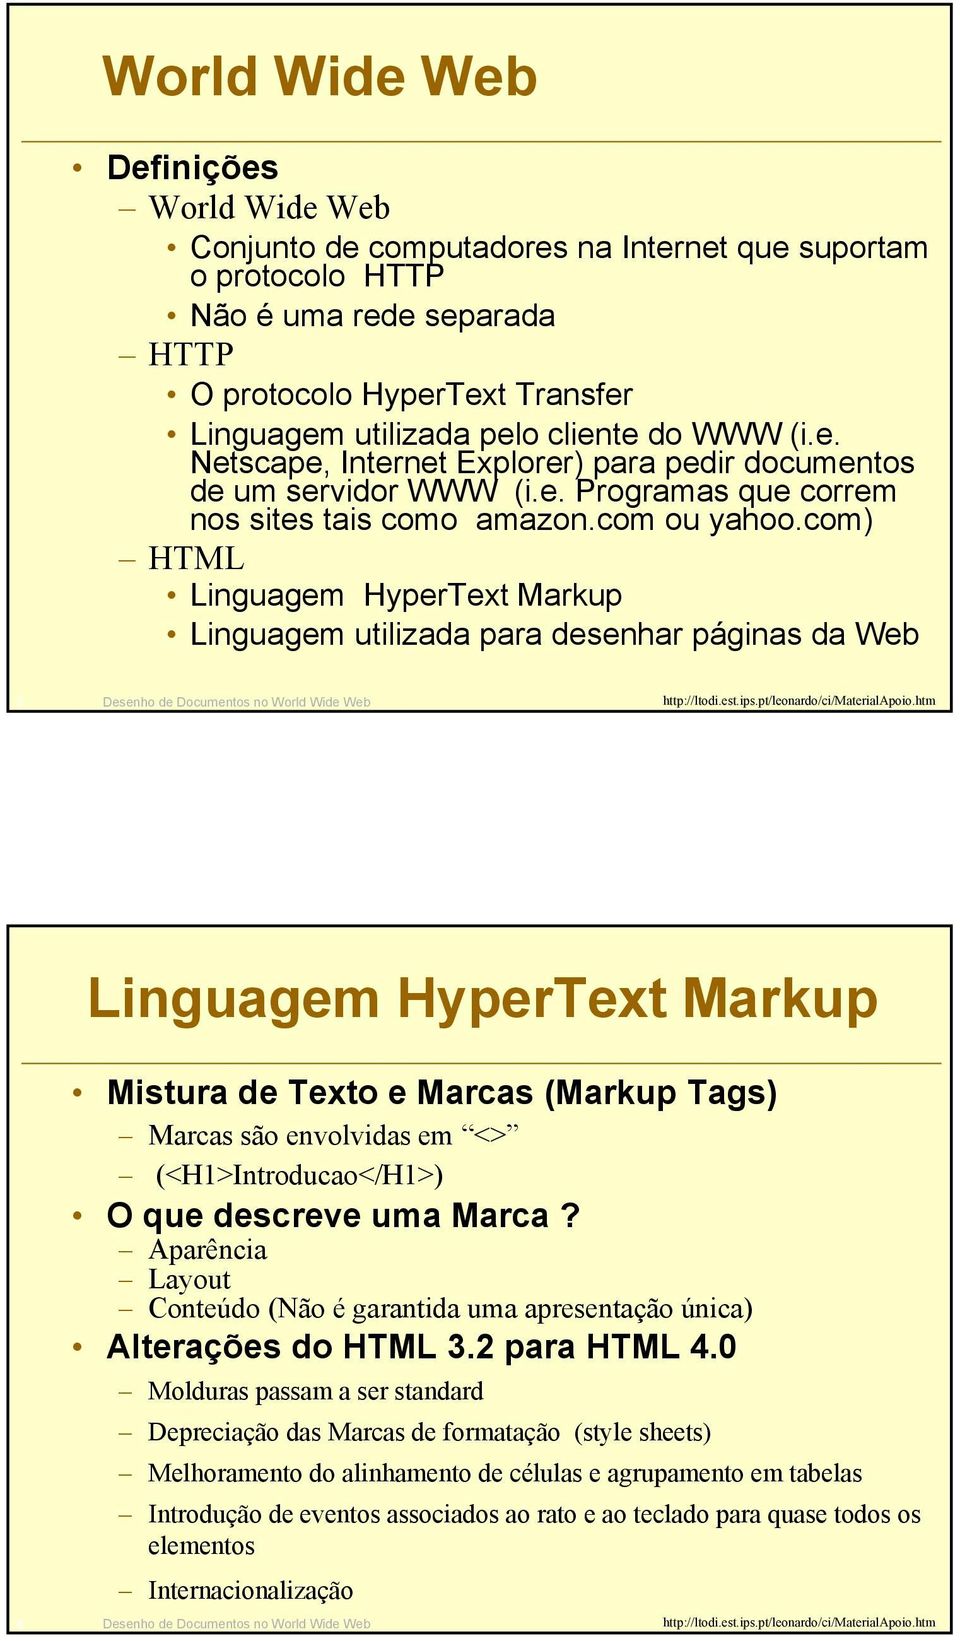 com) HTML Linguagem HyperText Markup Linguagem utilizada para desenhar páginas da Web 3 Desenho de Documentos no World Wide Web Linguagem HyperText Markup Mistura de Texto e Marcas (Markup Tags)